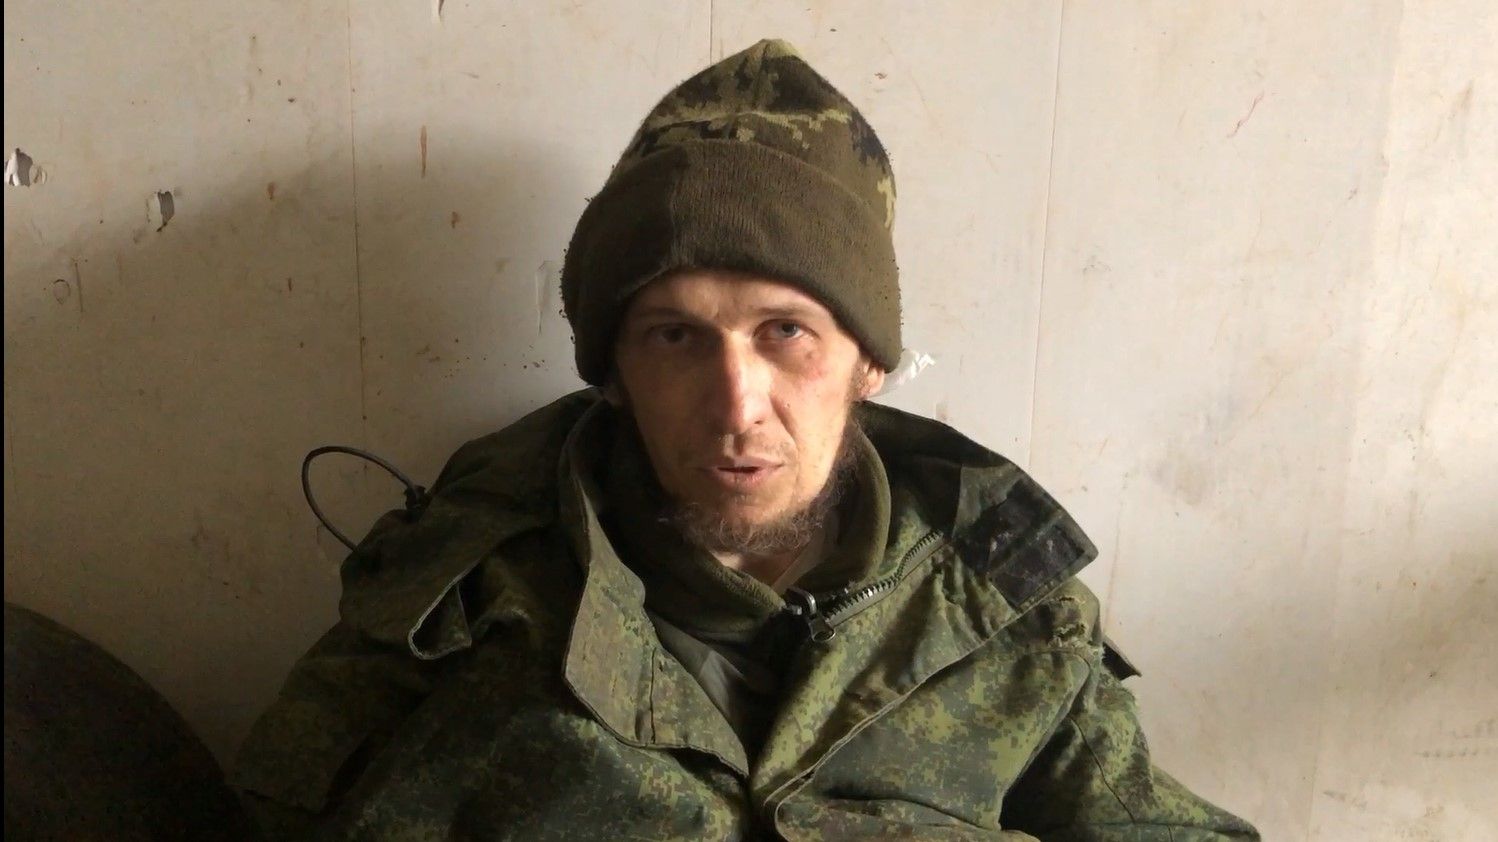 Допрос пленного боевика из Луганщины - как он оправдывает свое участие в войне